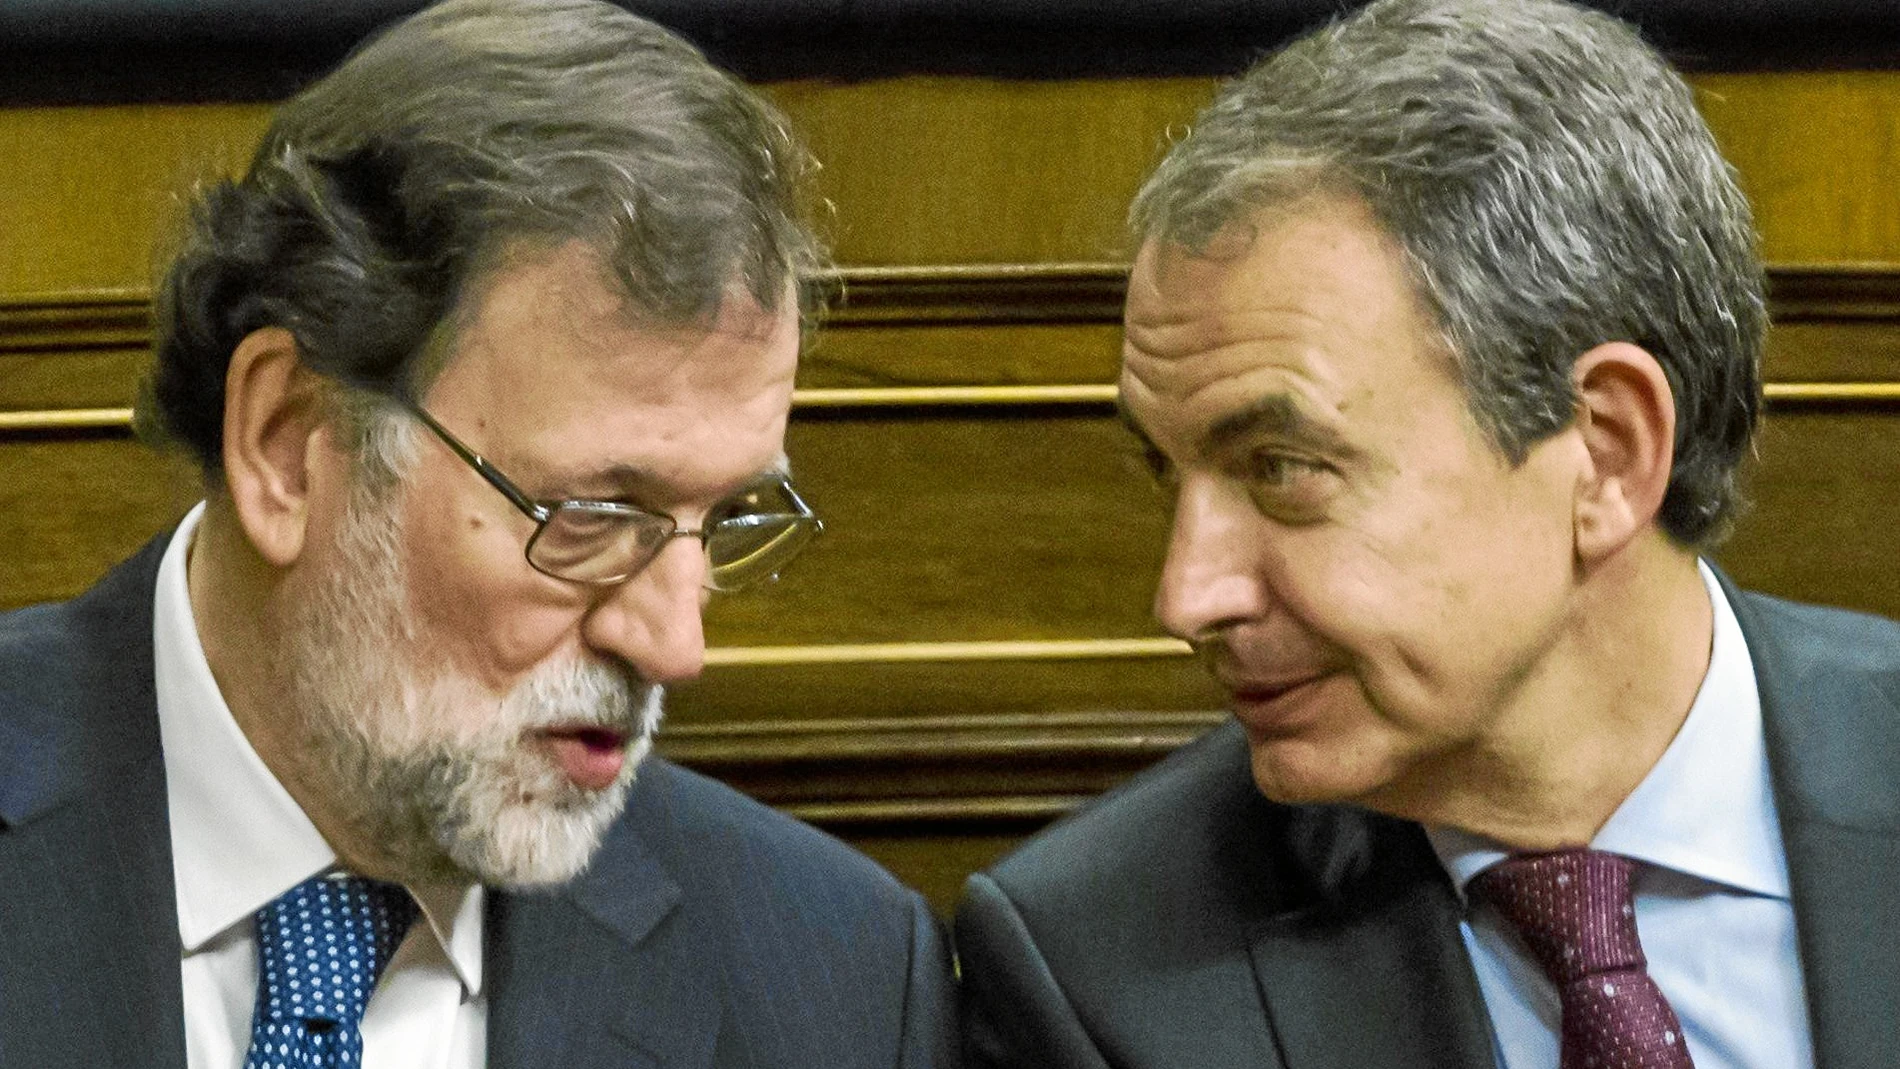 Mariano Rajoy y Zapatero conversan ayer durante el acto en el Congreso. Foto: Alberto R. Roldán